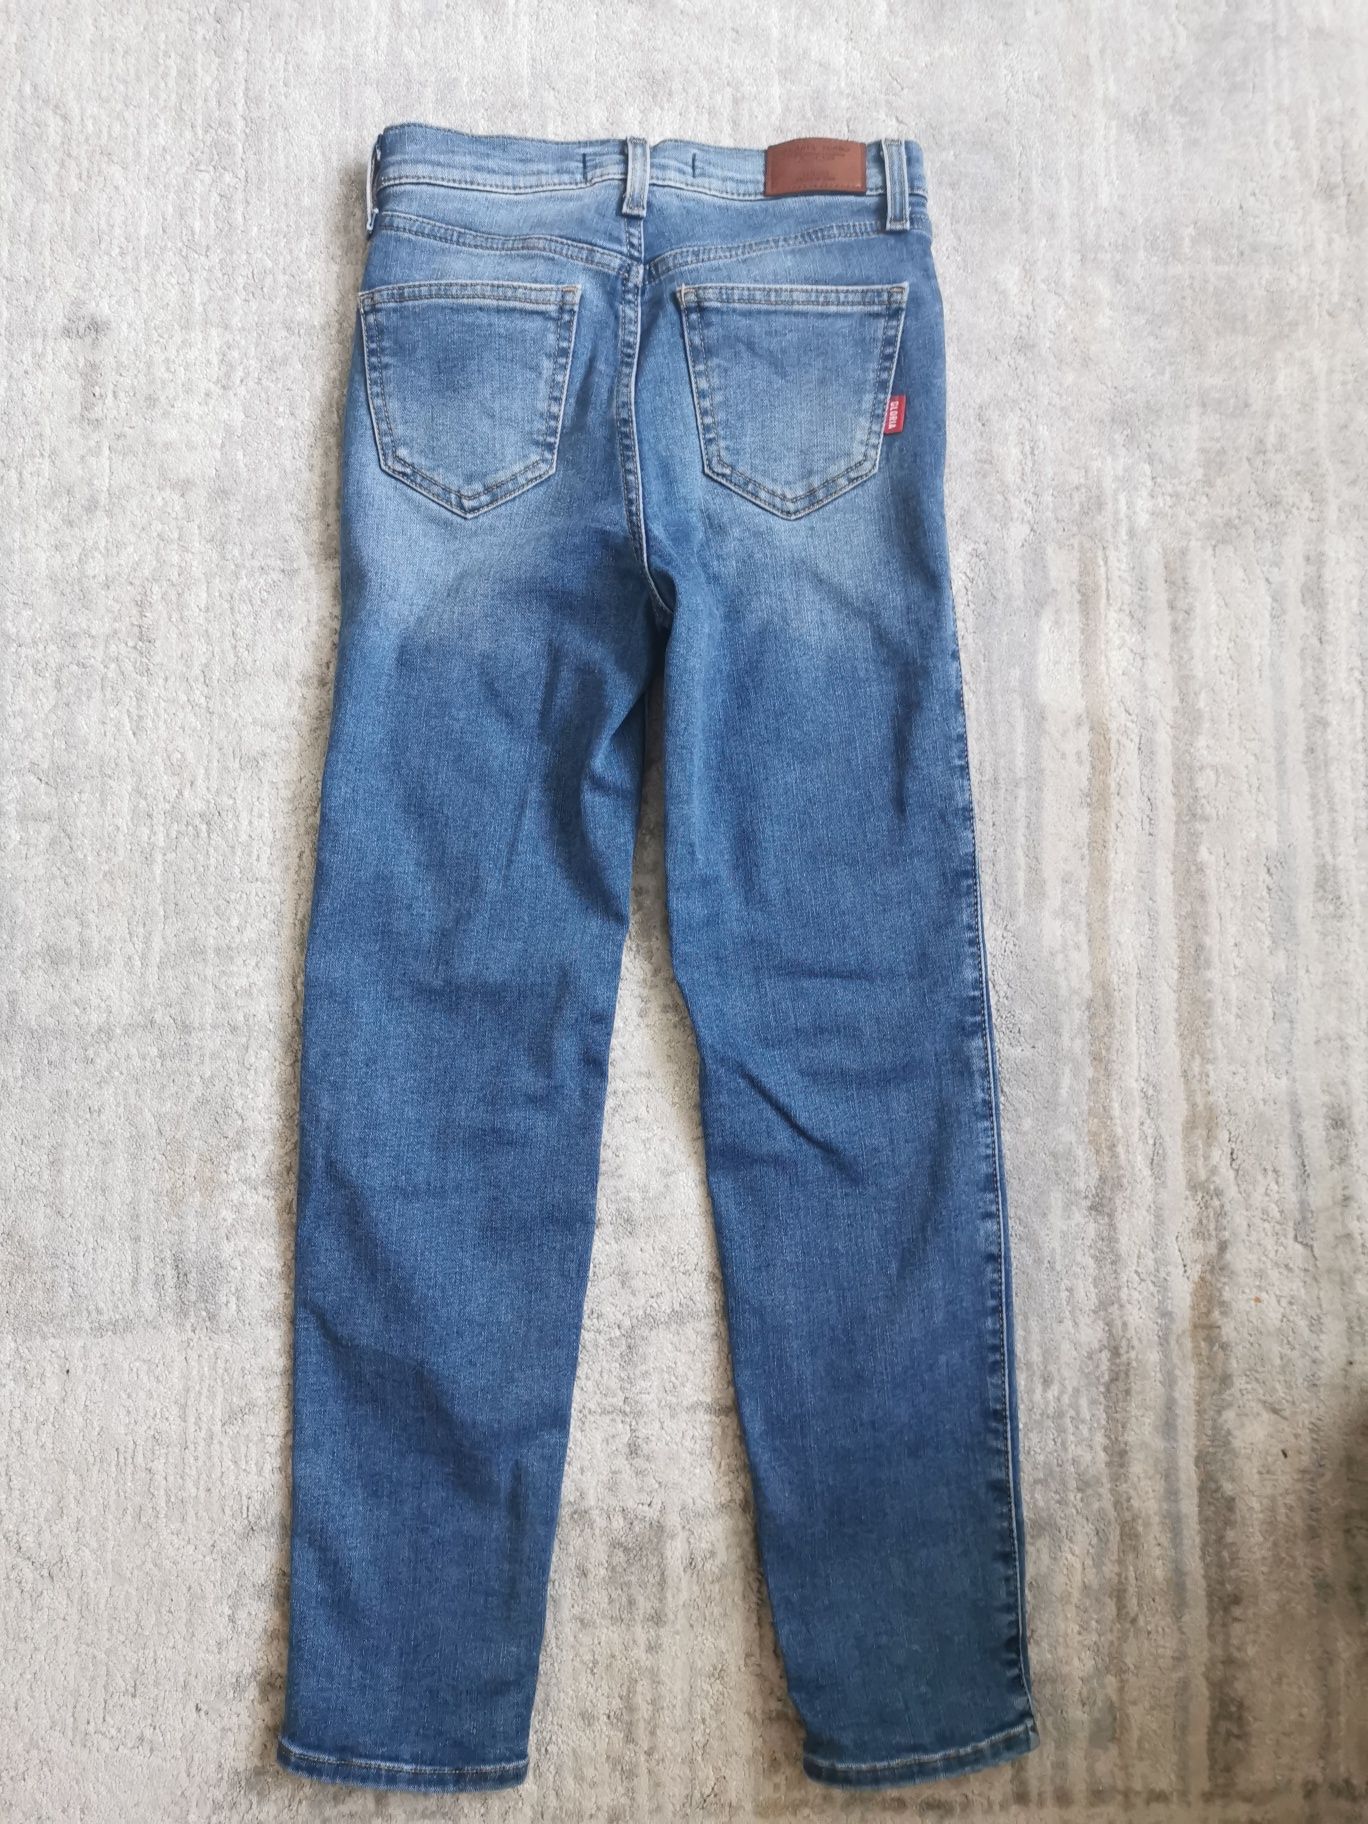 Продам практически новые джинсы фирмы "Gloria Jeans"  для девочки